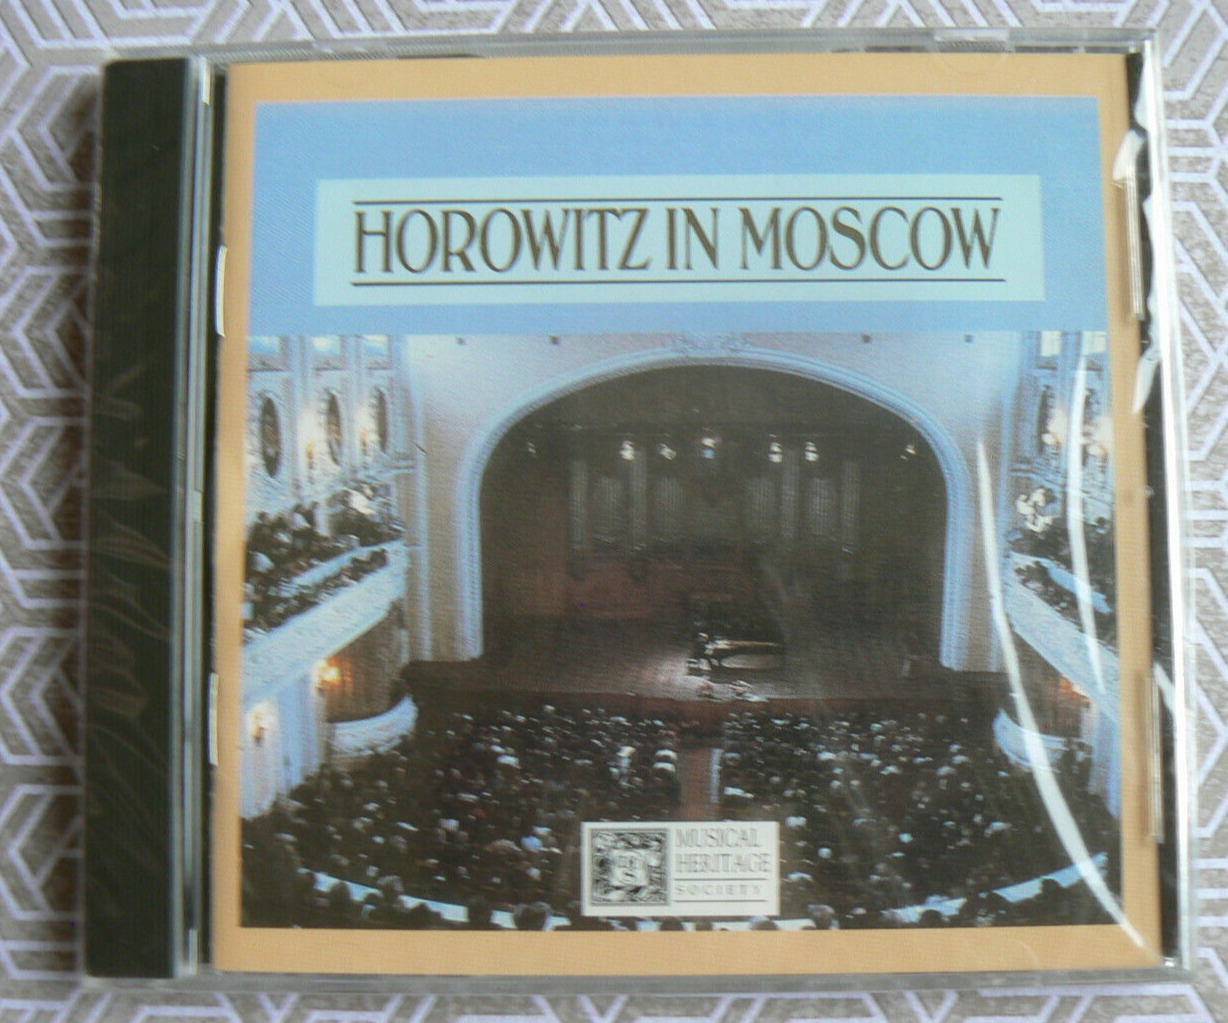 NEW S/S CD : Horowitz in Moscow, Piano 1986 Deutsche Grammophon,Musical Heritage